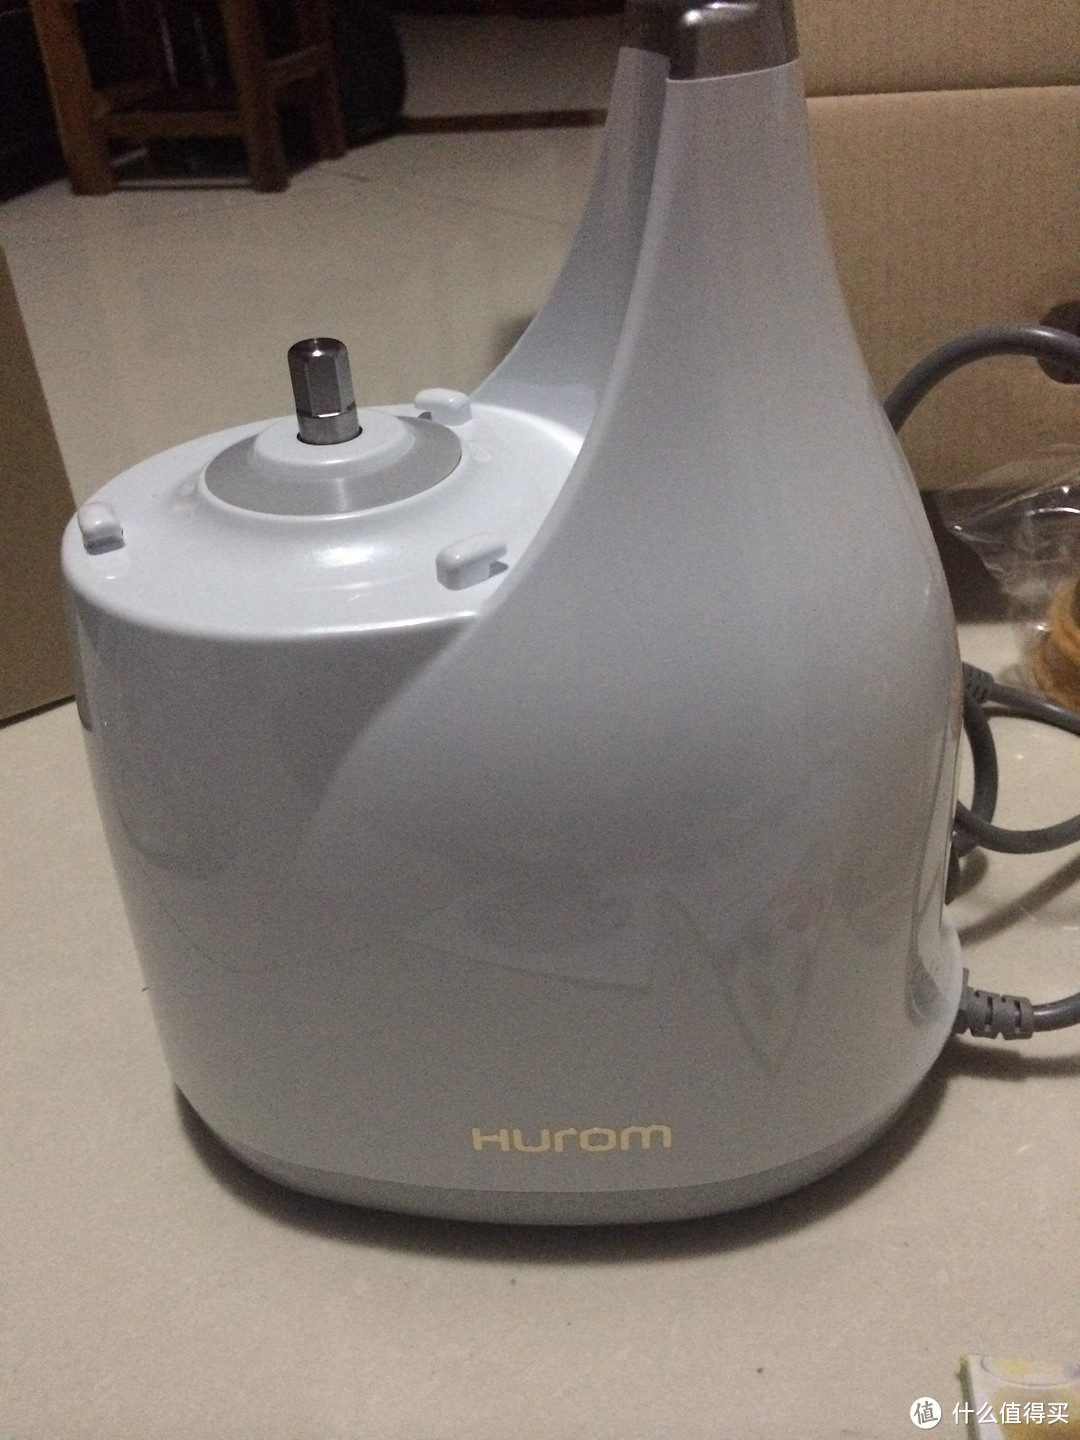 生活是用来享受的：Hurom 惠人HU-300 原汁机 简单使用